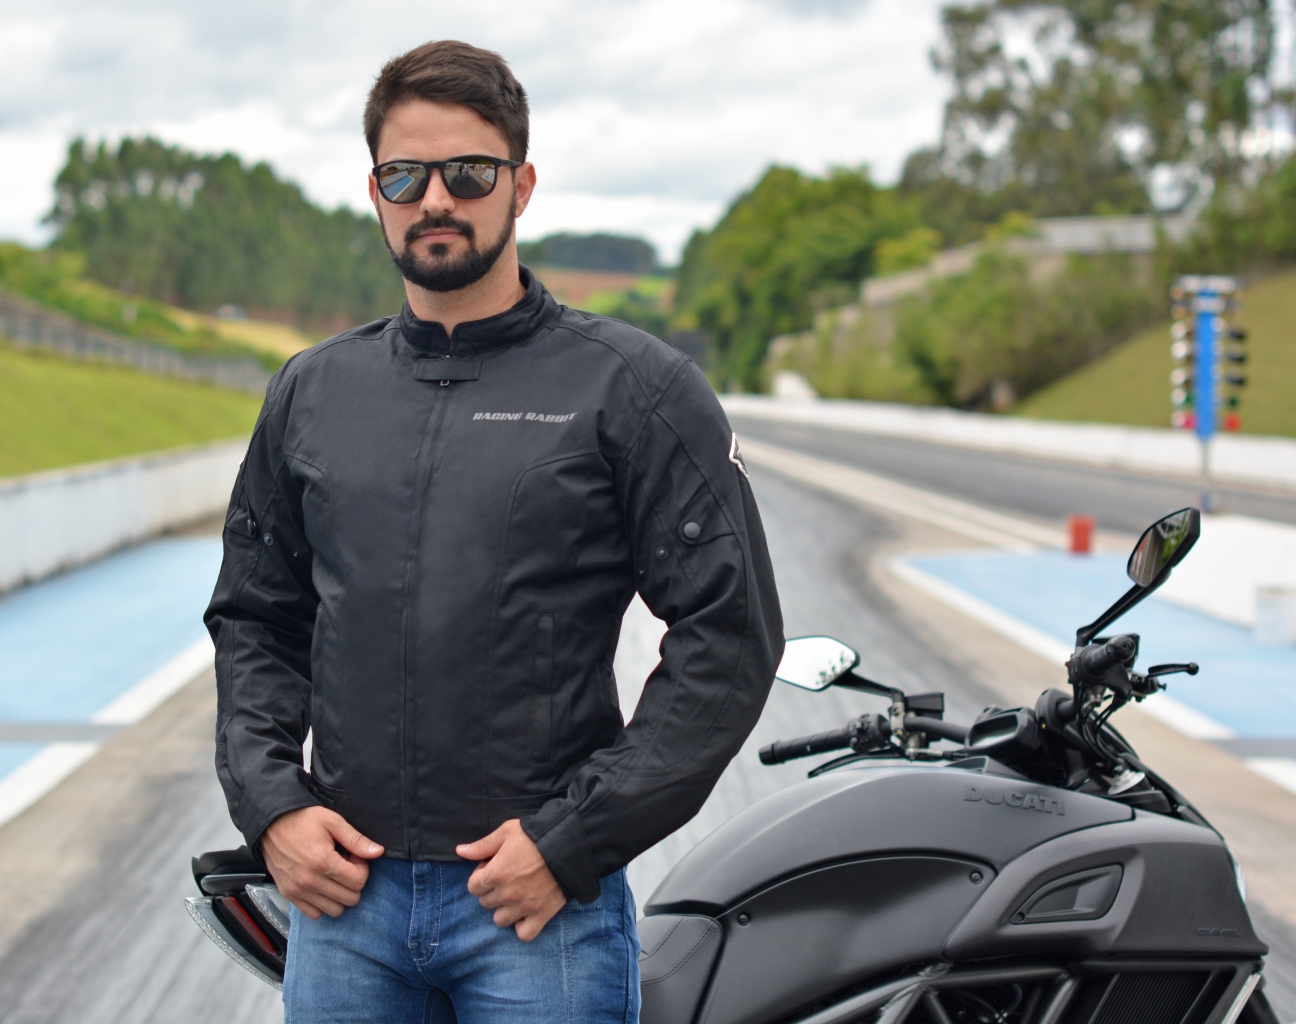 jaqueta de moto com proteção